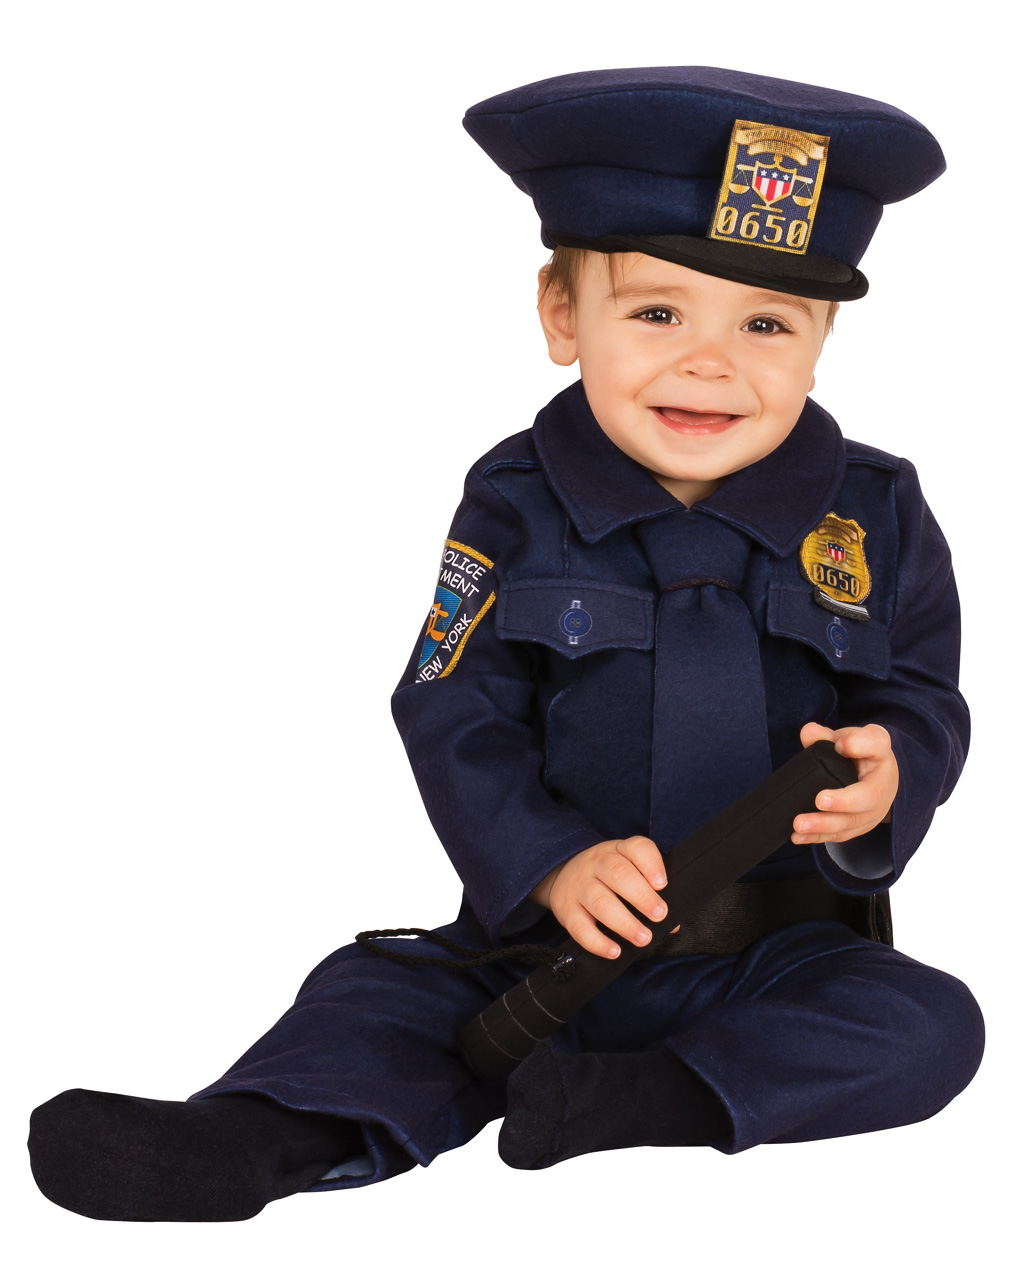 Polizei Kleinkinderkostüm  Berufskostüme Kleinkind